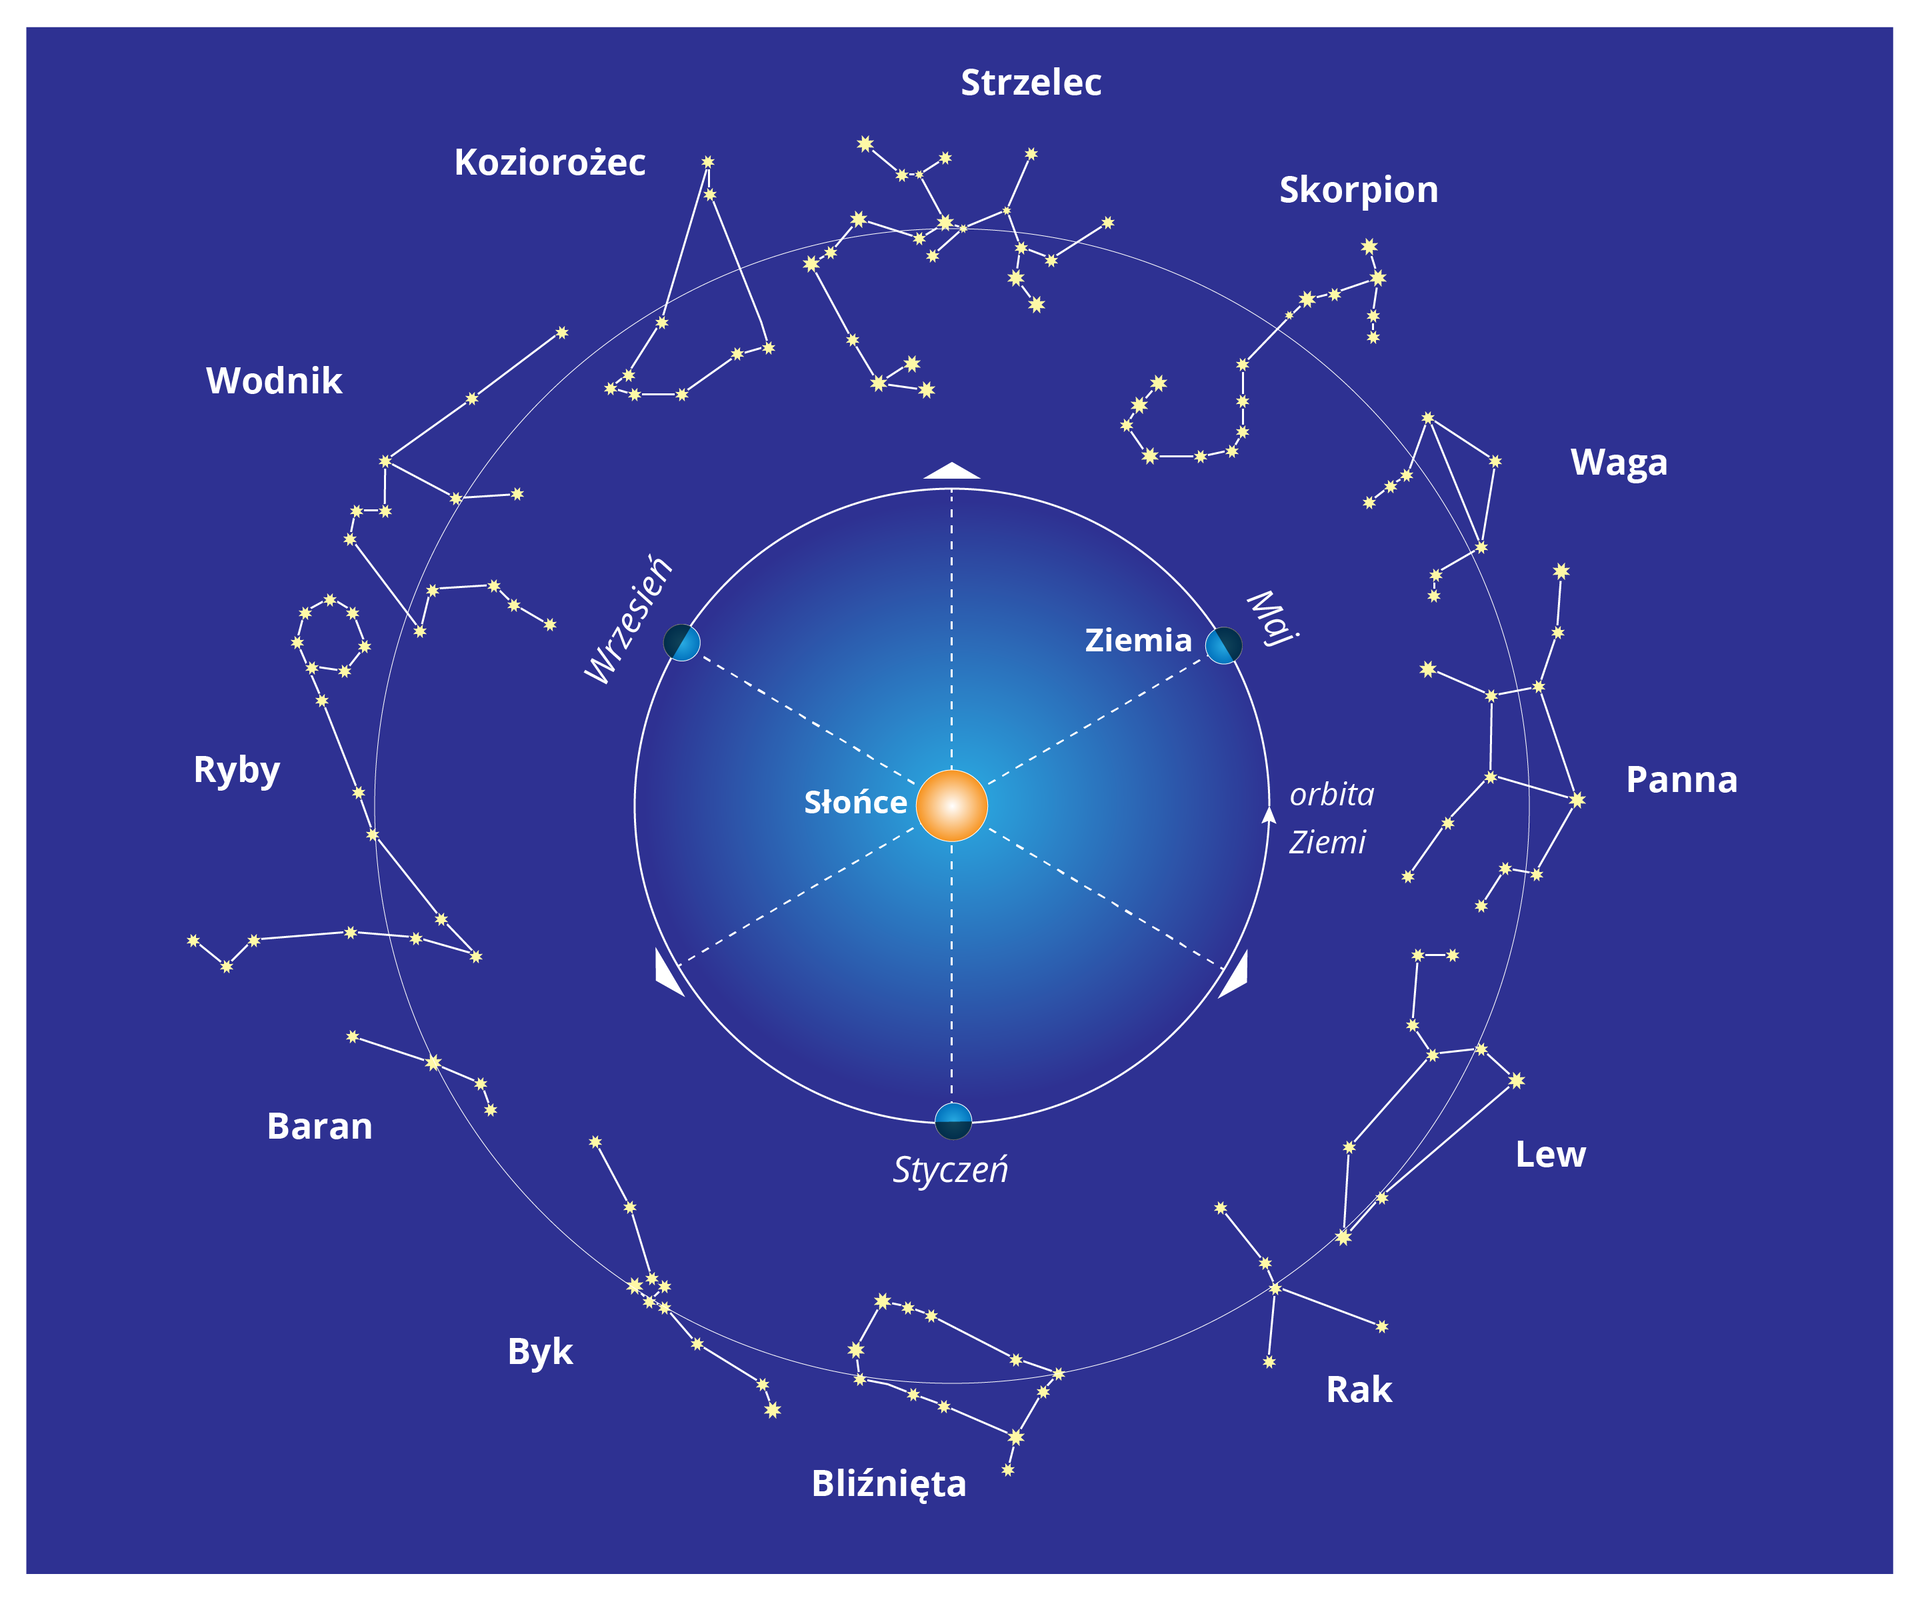 Ilustracja prezentuje zodiak. W środku ilustracji znajduje się Słońce. Dookoła niego okrąg podzielony na sześć równych części. Na zewnątrz większy okrąg na którym narysowano gwiazdozbiory poszczególnych znaków zodiaku.